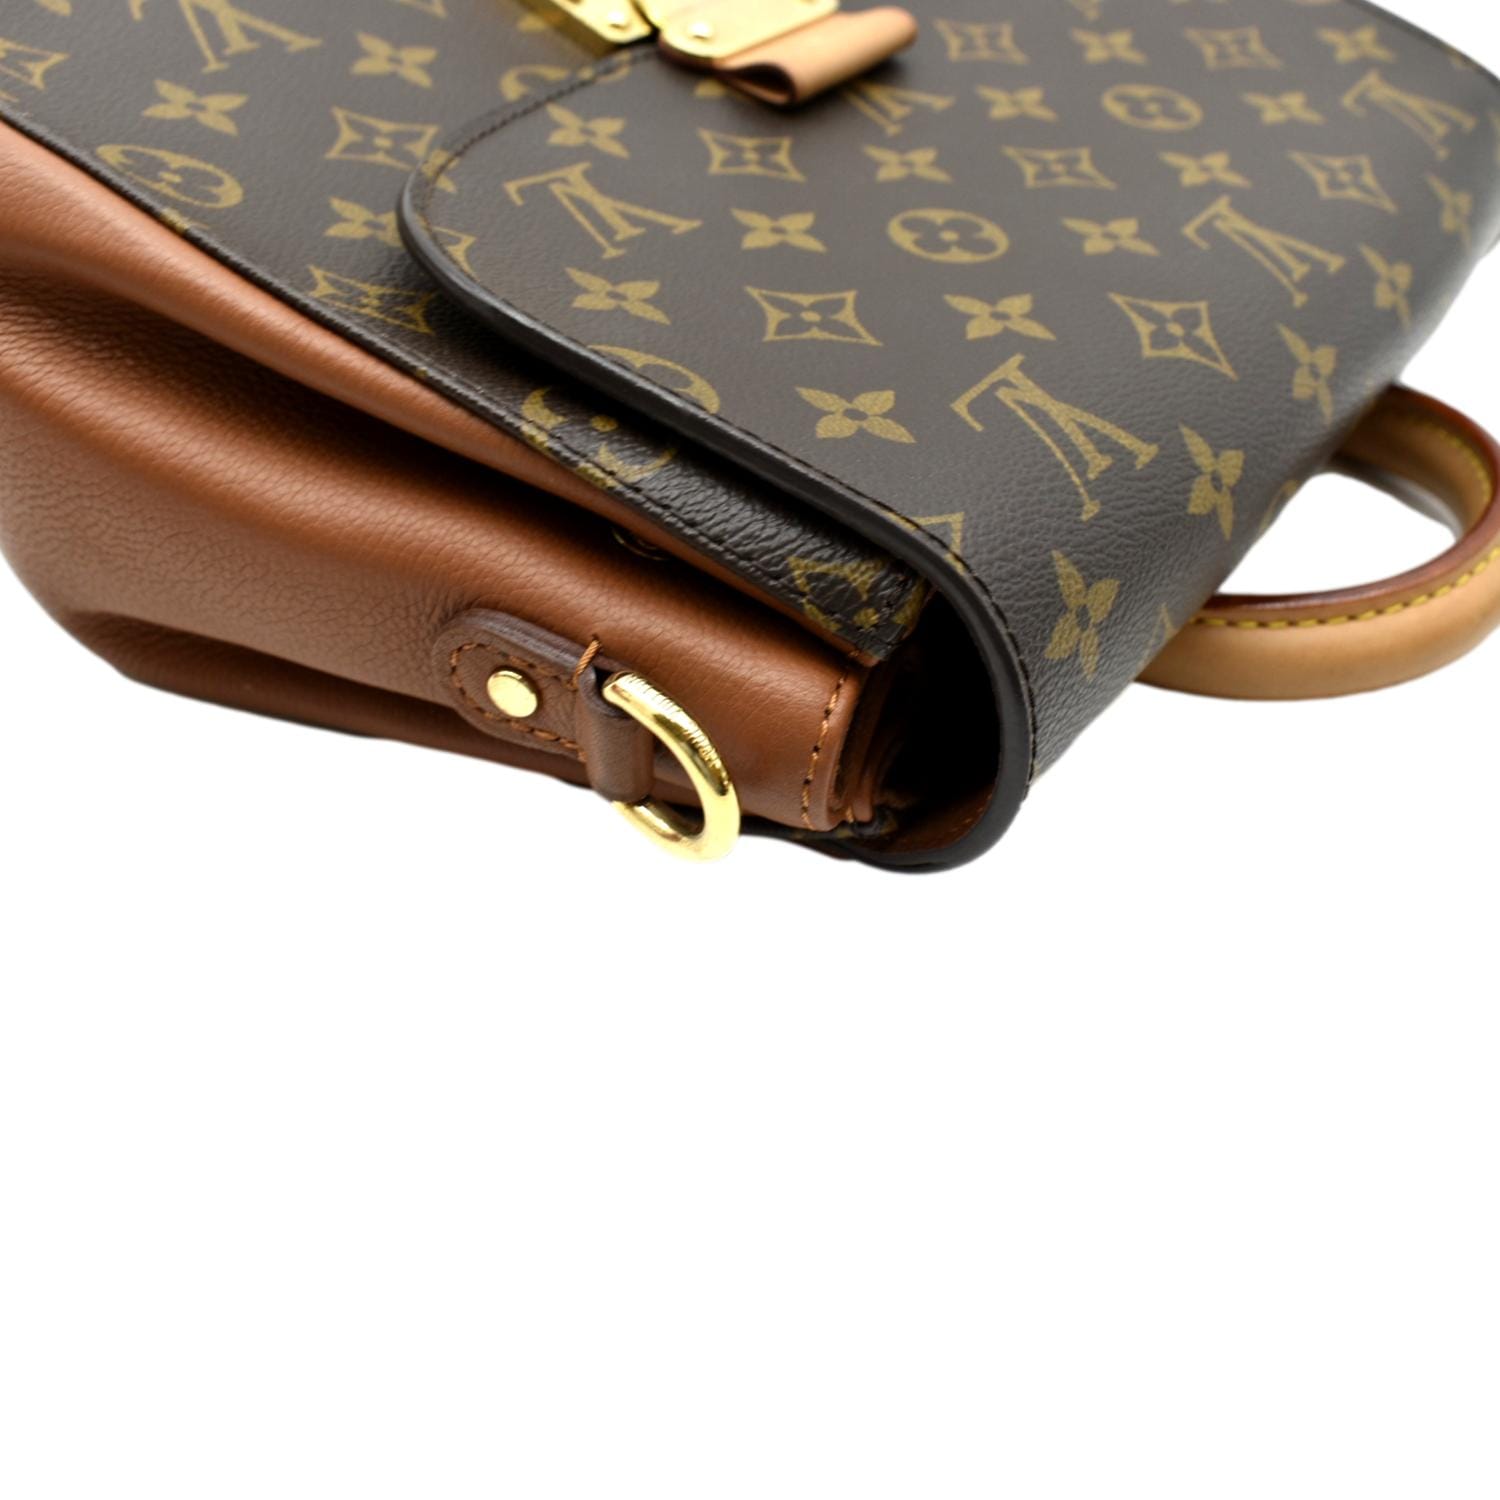 Louis Vuitton Sling Bag Modeling